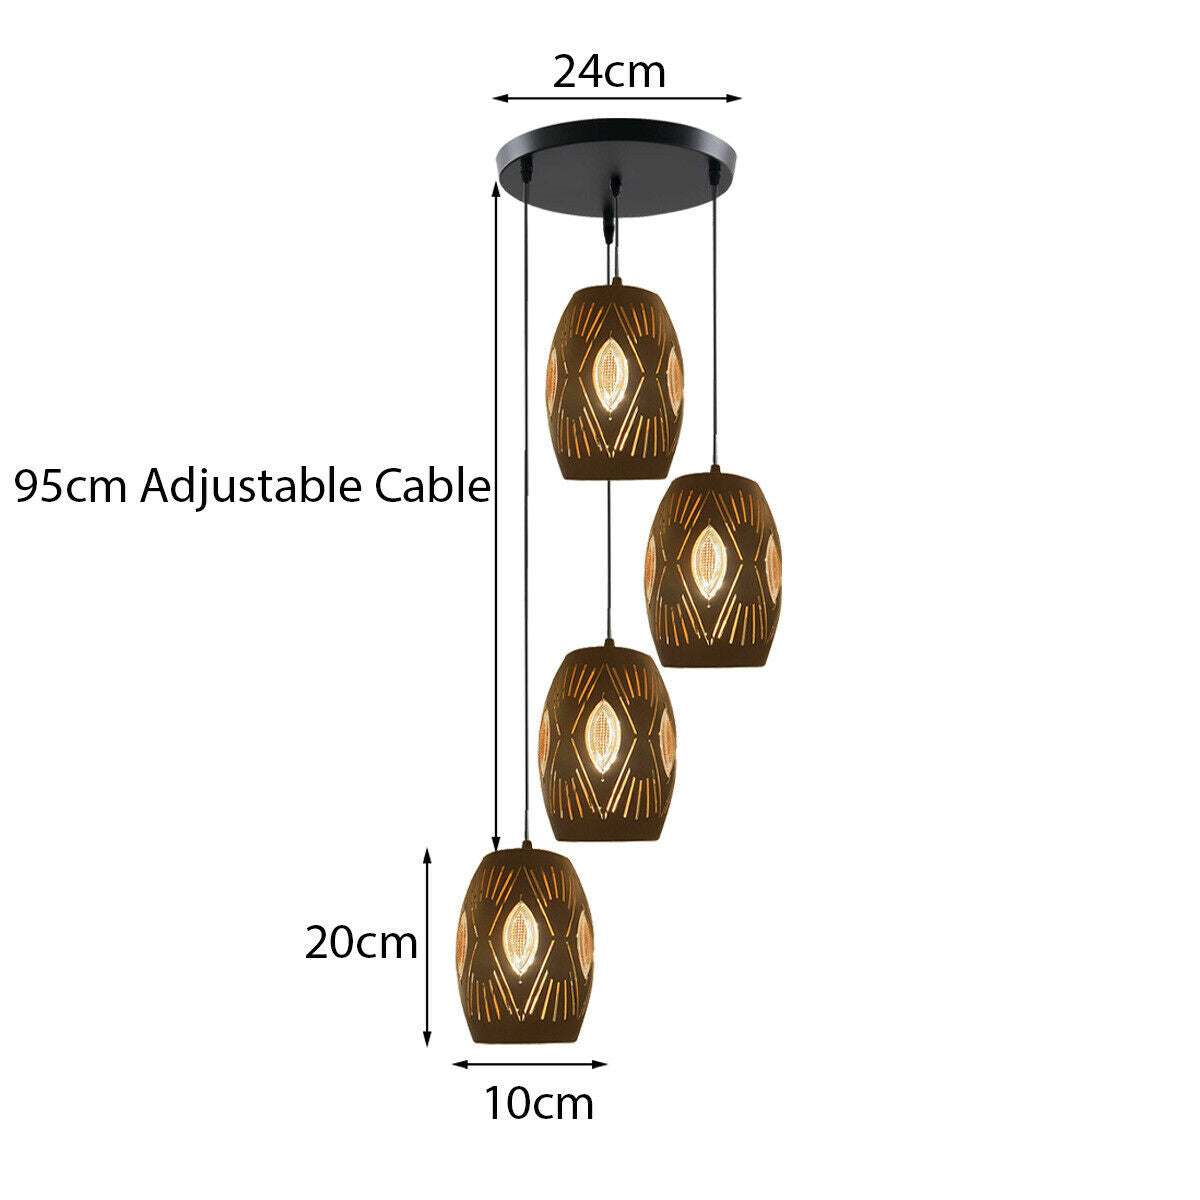 4 Way Multi Tier Ceiling Light Pendant Eyeball Design Shades Modern Fitting~1568 - LEDSone UK Ltd